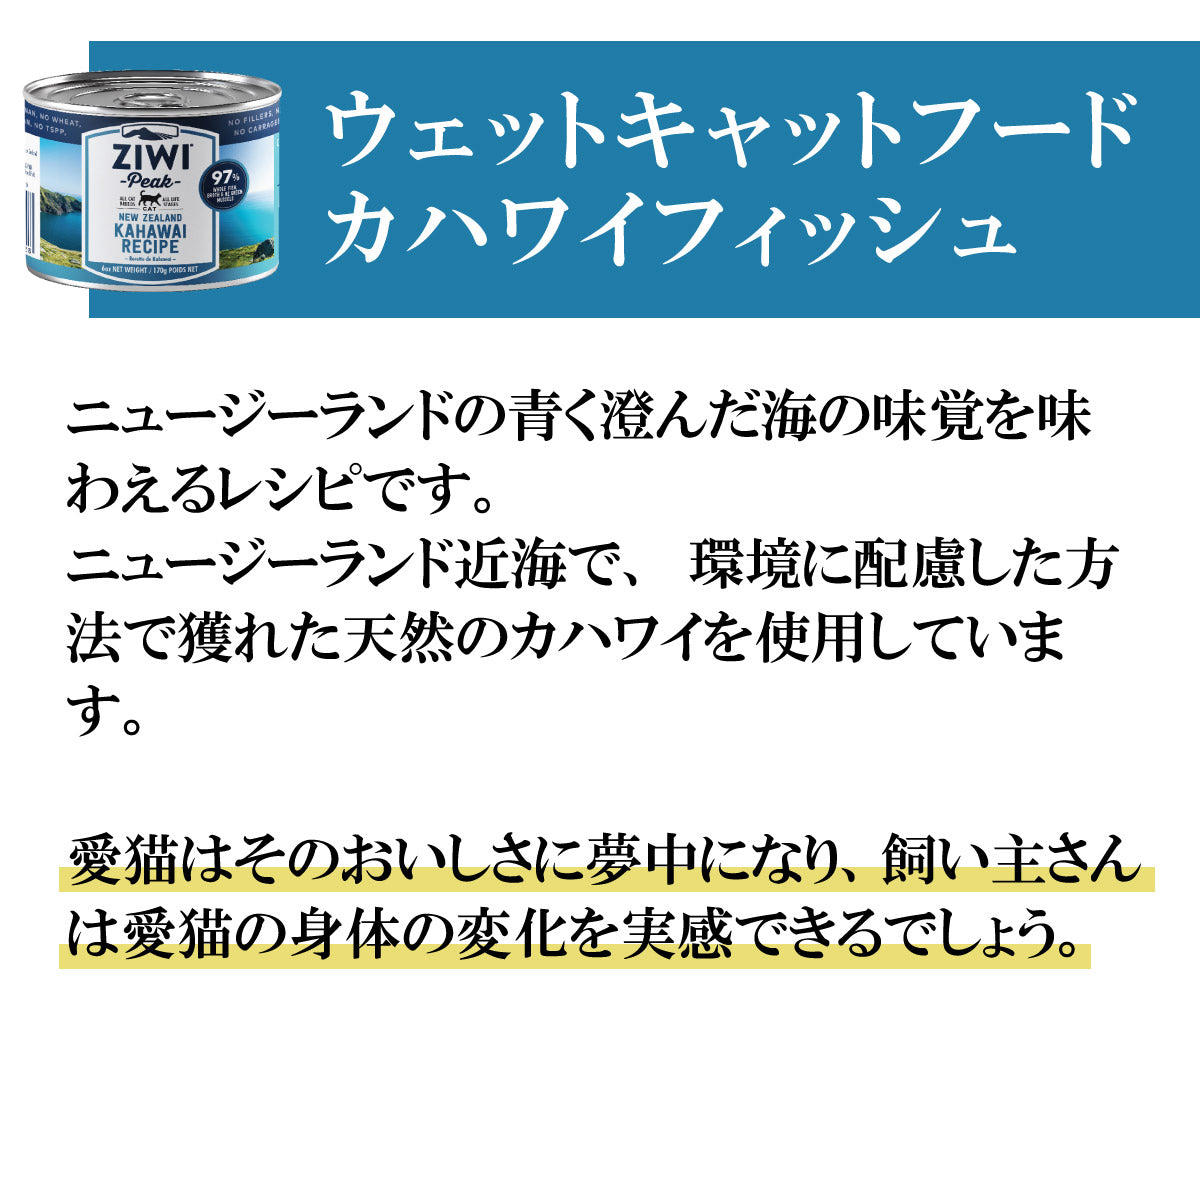 ジウィ ZIWI キャットフード キャット缶 カハワイフィッシュ 170g×12缶【送料無料】 正規品 無添加 ジウィピーク